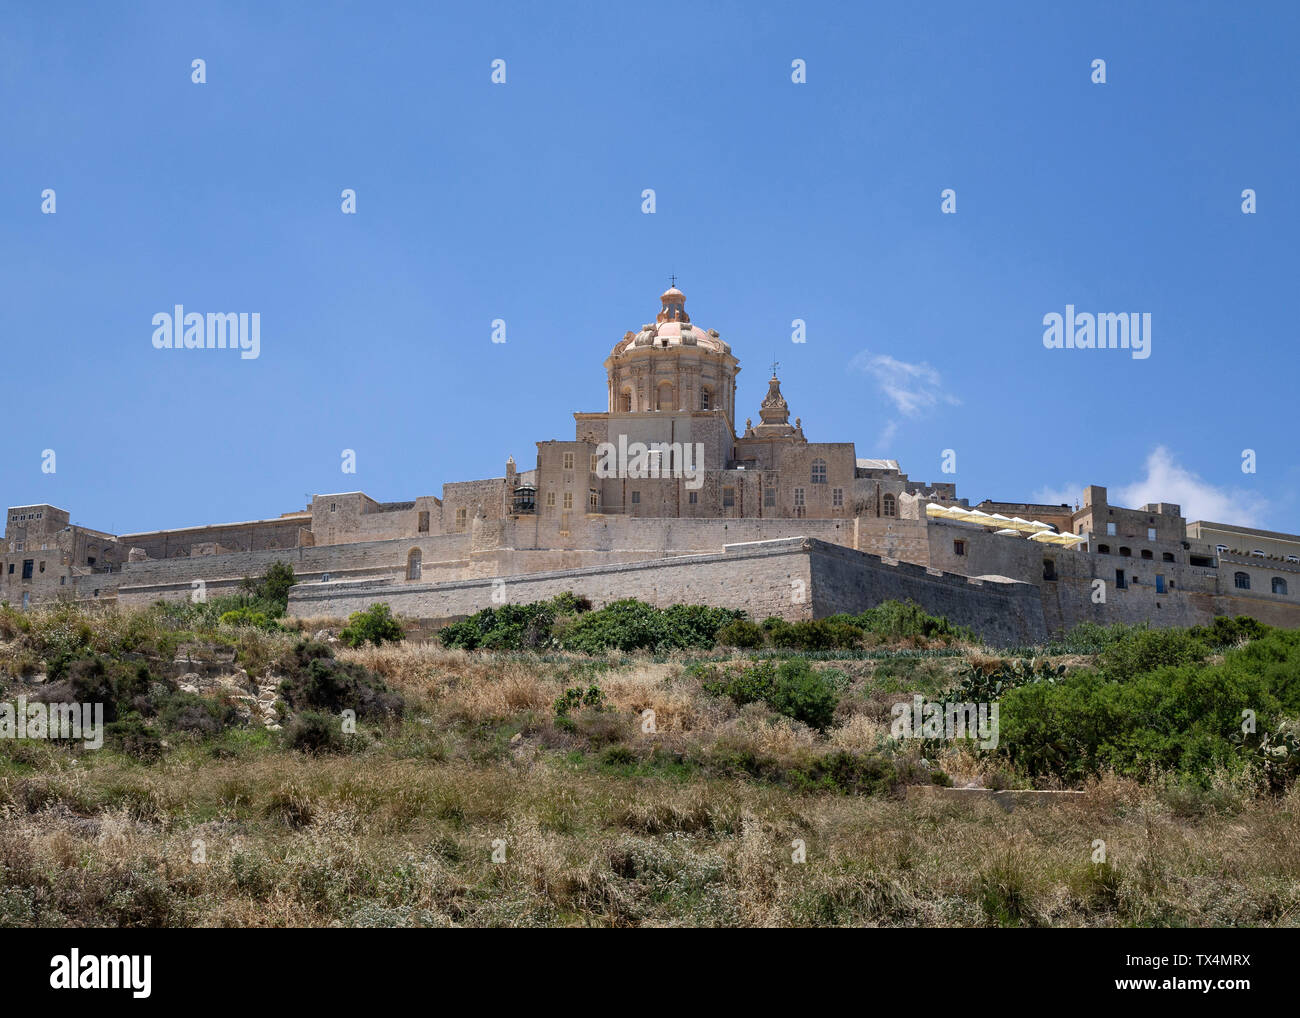 L'ancienne ville fortifiée de Mdina Malte Vue de dessous Banque D'Images